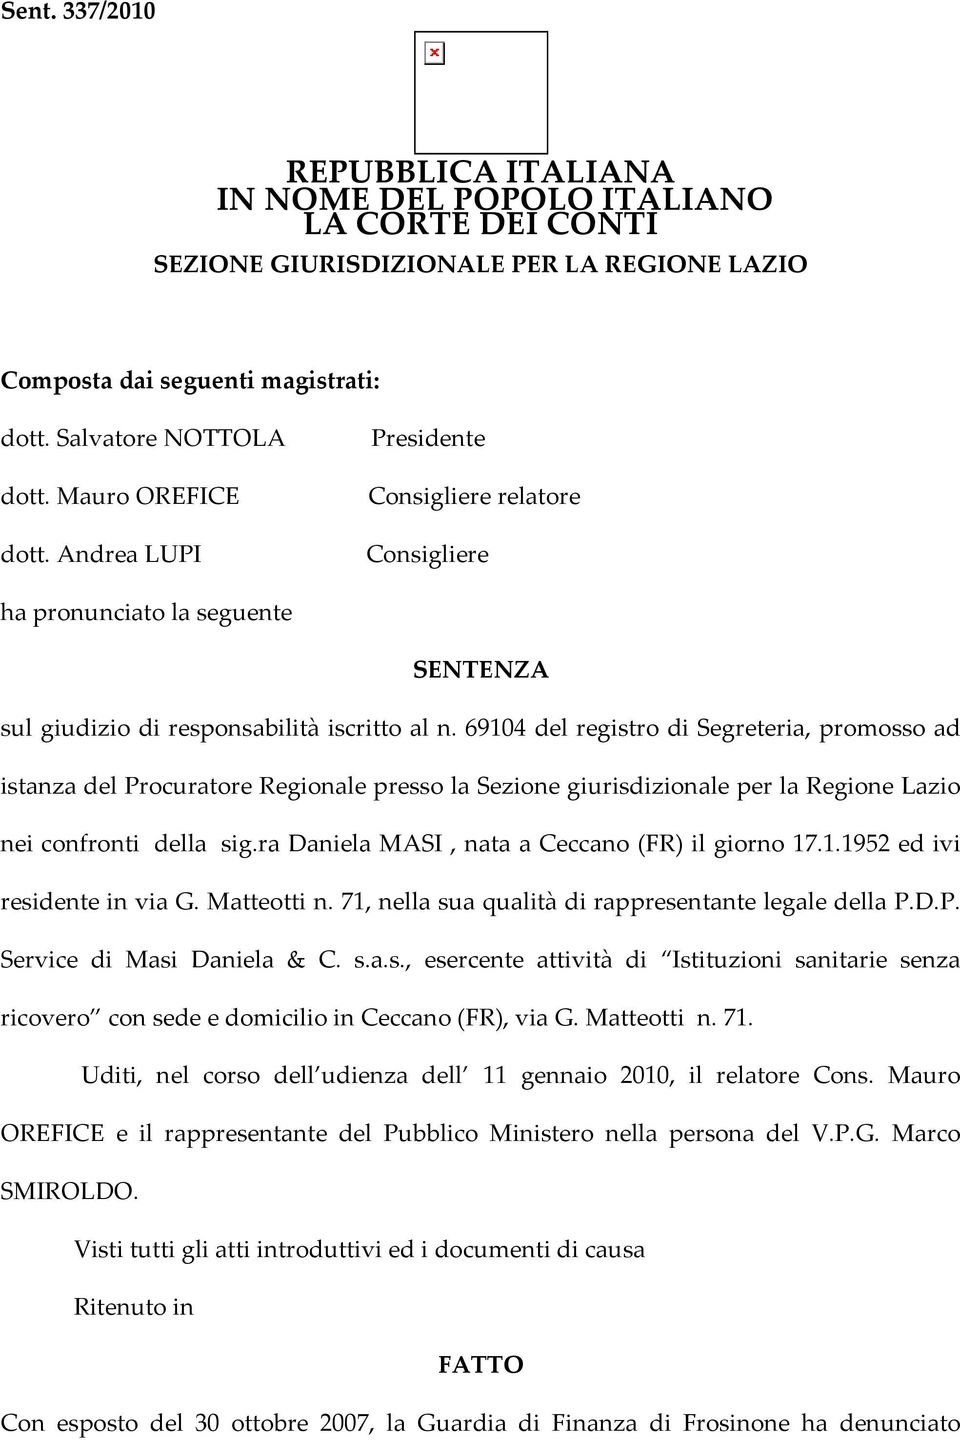 69104 del registro di Segreteria, promosso ad istanza del Procuratore Regionale presso la Sezione giurisdizionale per la Regione Lazio nei confronti della sig.